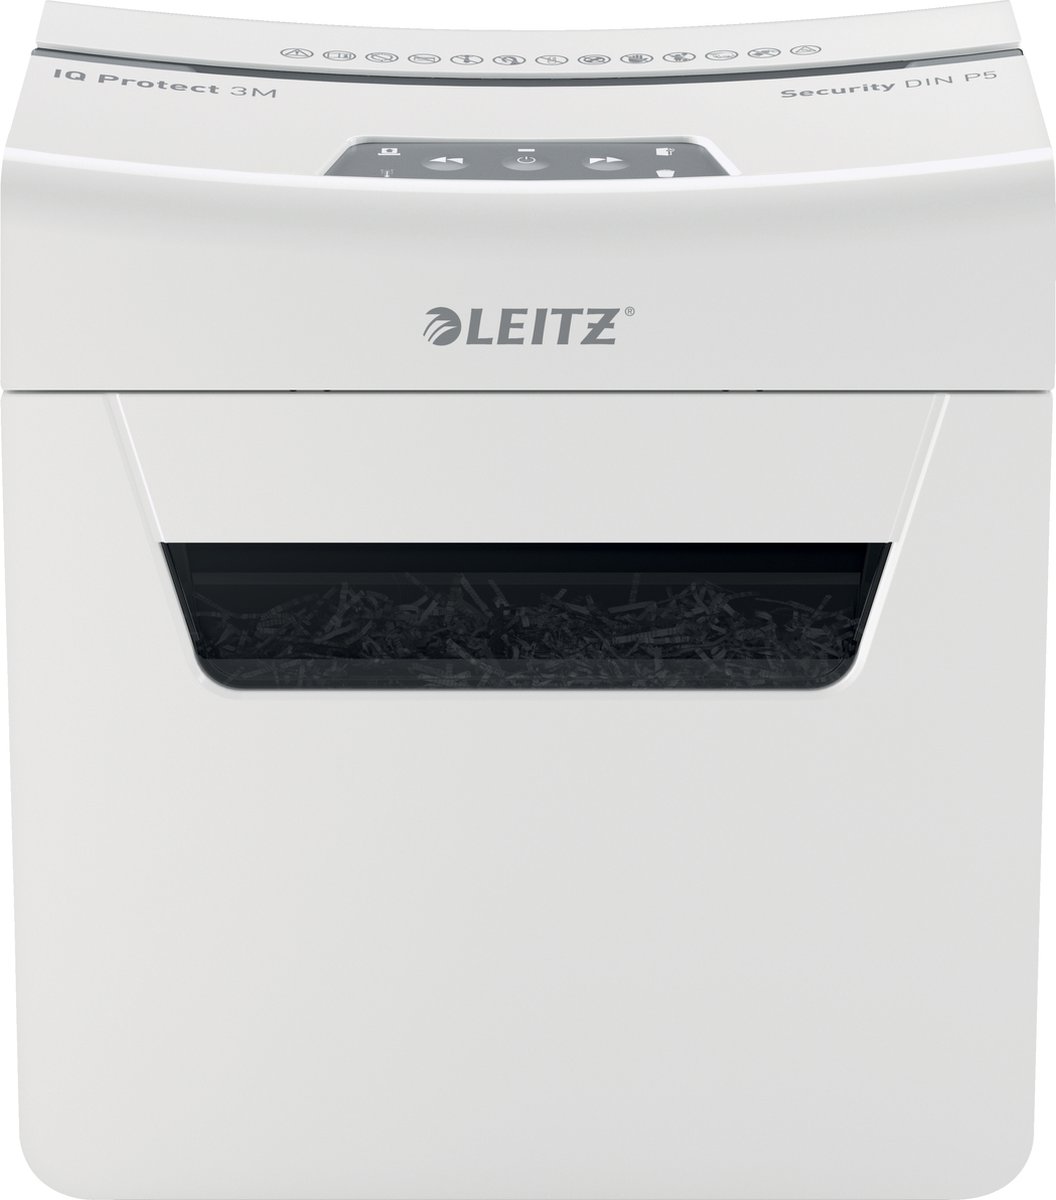 Leitz IQ Protect Premium 3M Ultrastille Papierversnipperaar  P-5 Micro Voor Thuis/Thuiswerkplek - Invoer tot 3 Vellen - Wit - Leitz